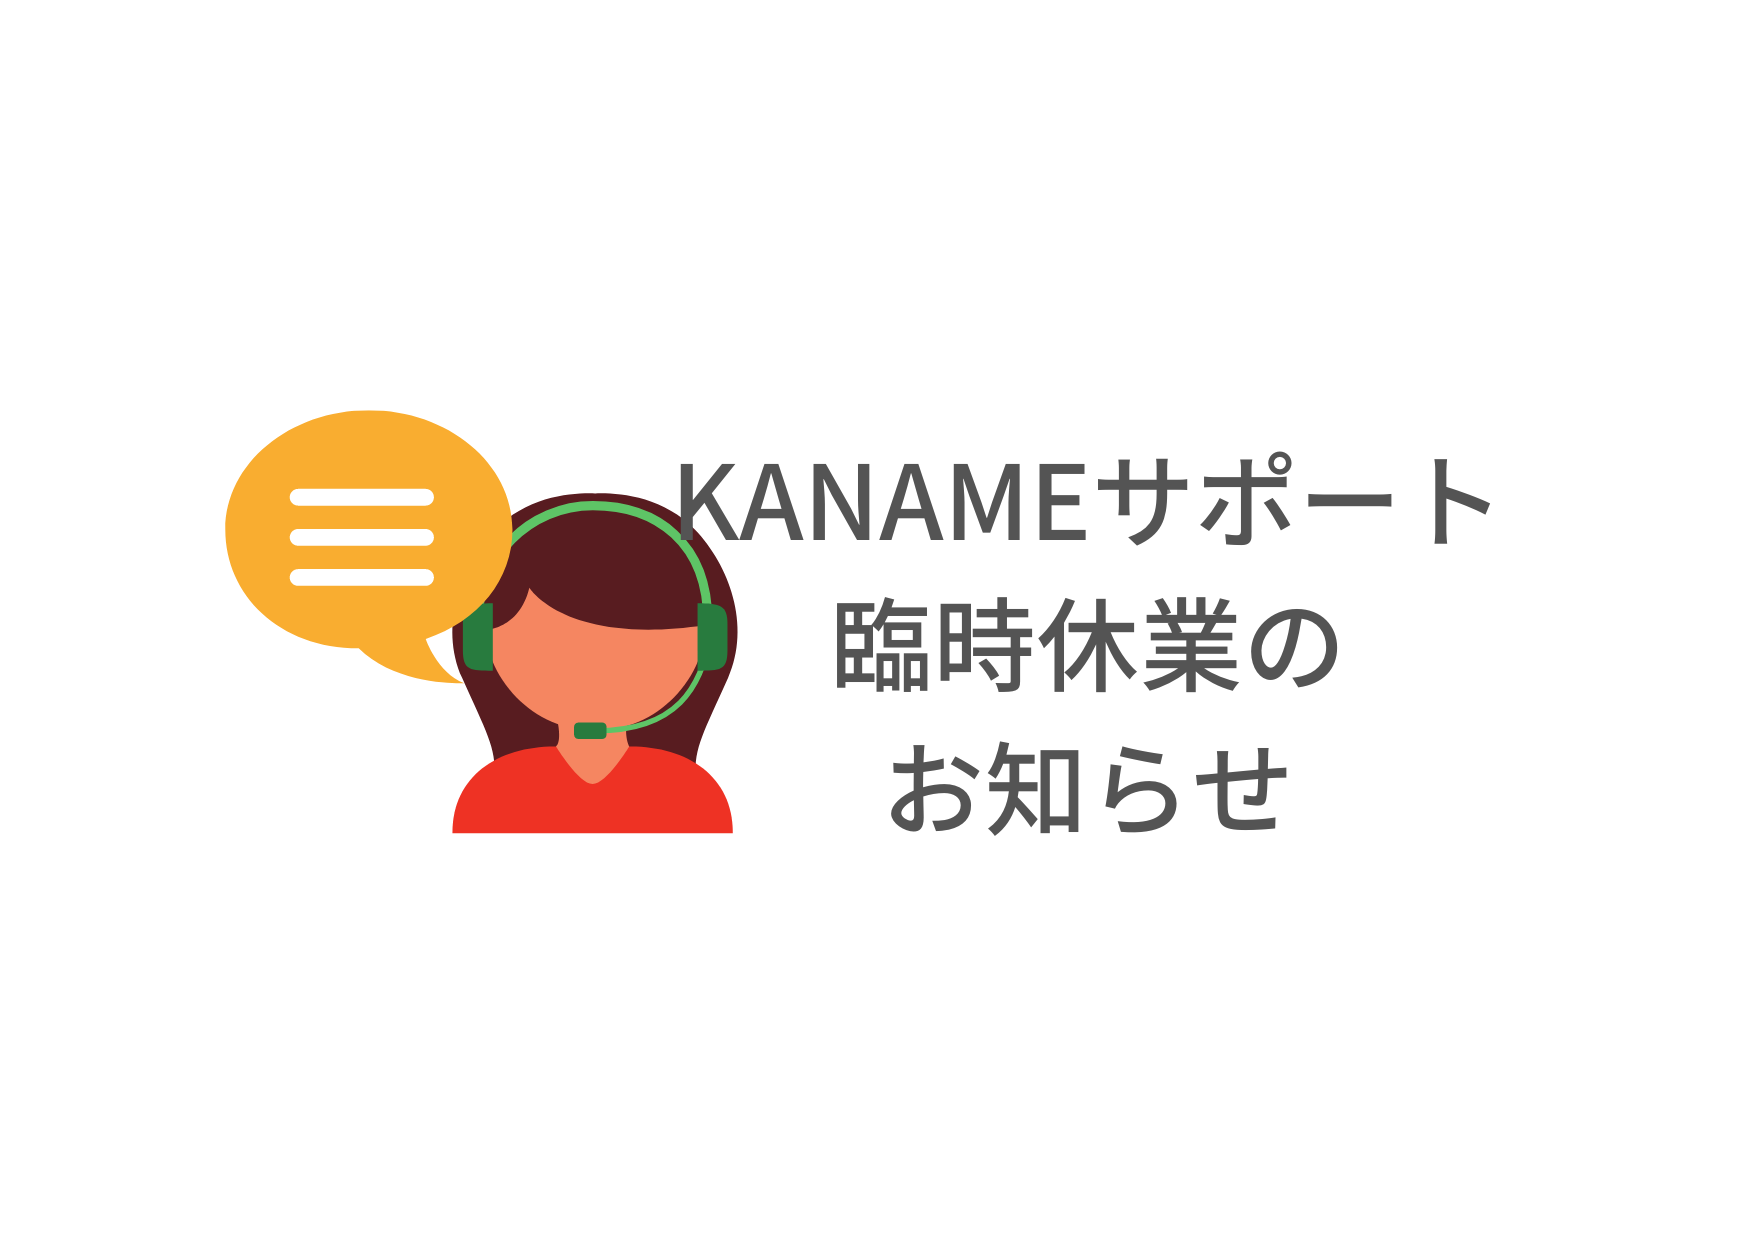 【KANAME】電話サポート臨時休業のお知らせ